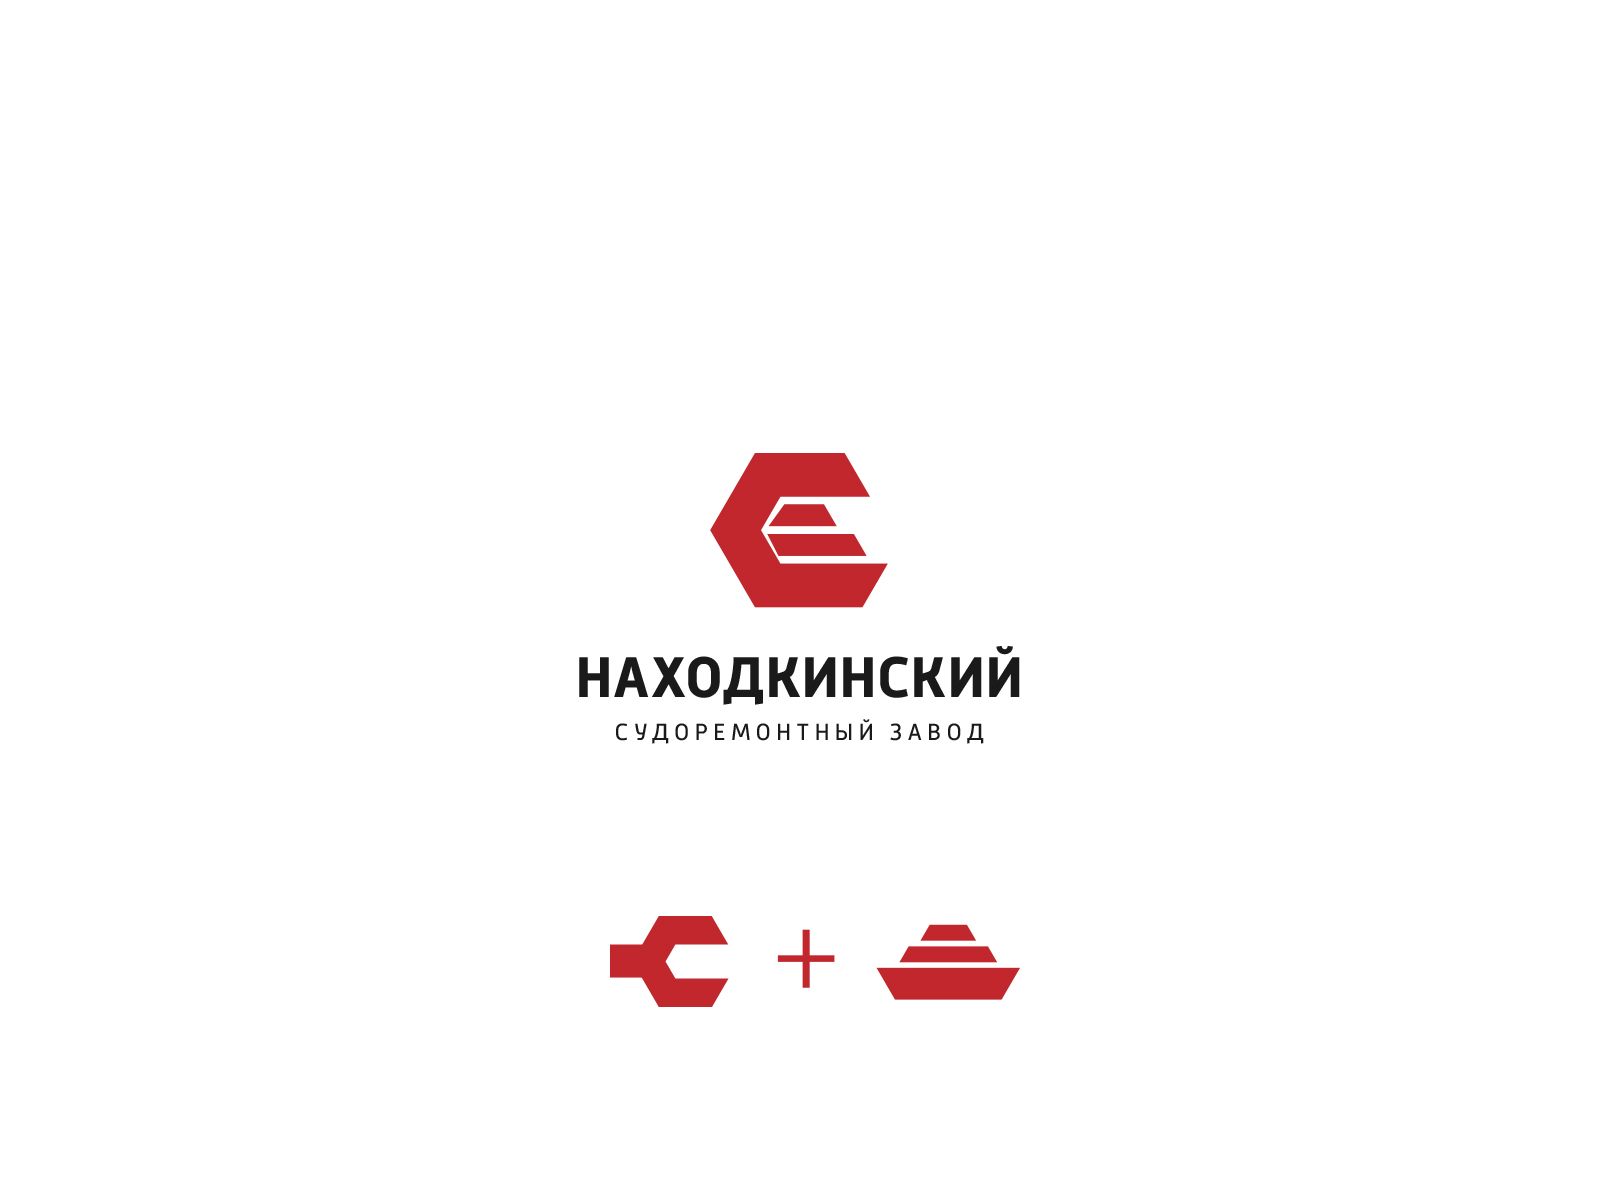 Лого и фирменный стиль для НСРЗ - дизайнер U4po4mak